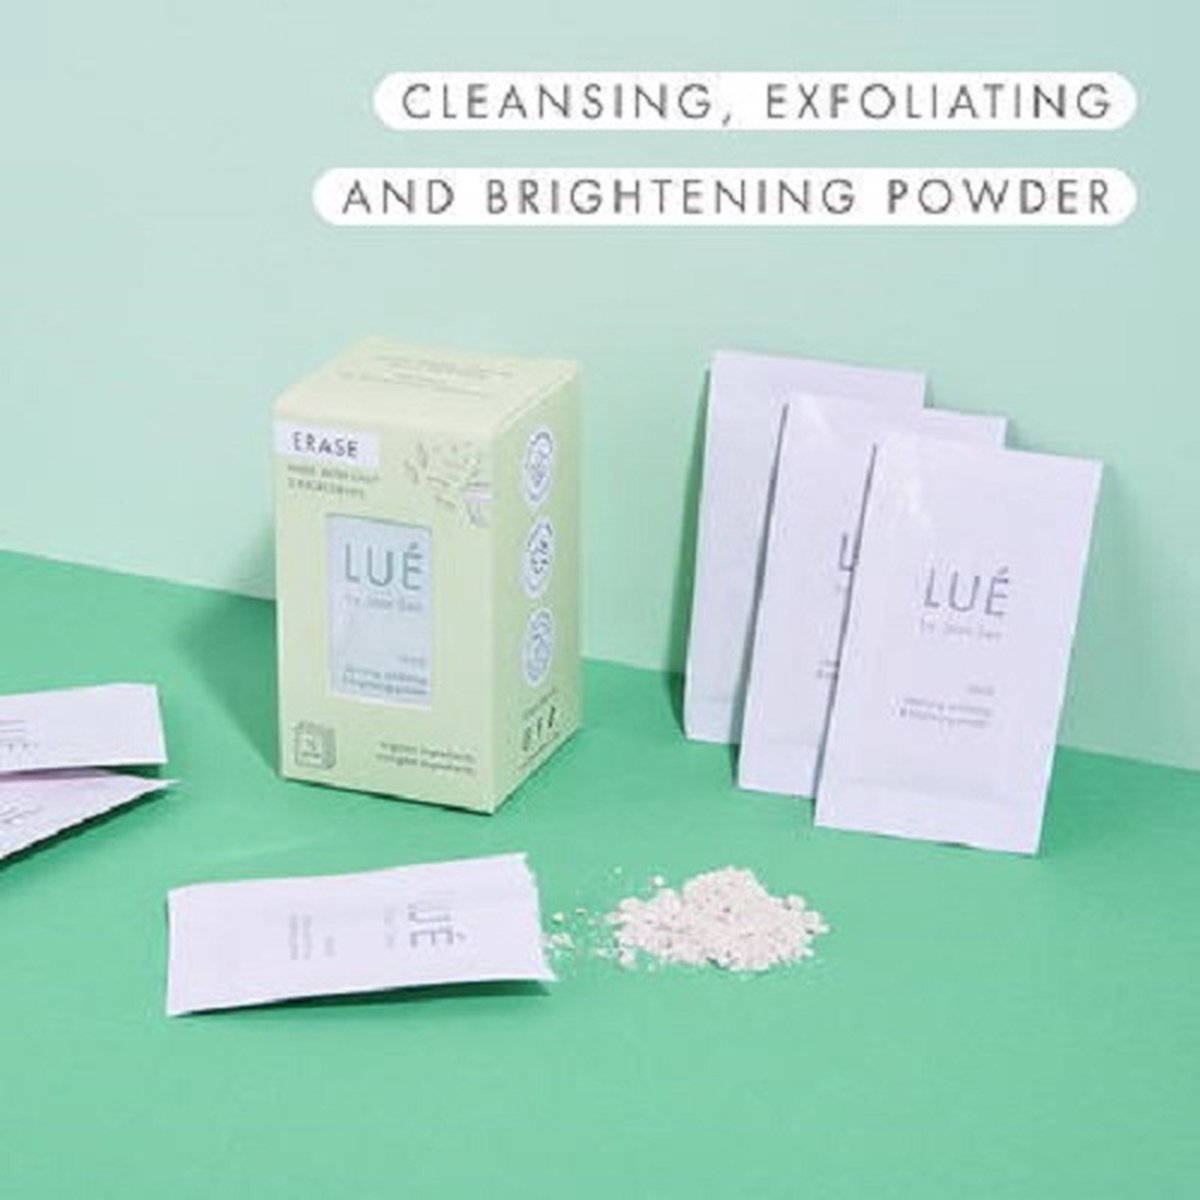 Lué by Jean Seo - Erase - cleansing powder to go - reis verpakking - travel - - gezicht - schoonmaak - vegan